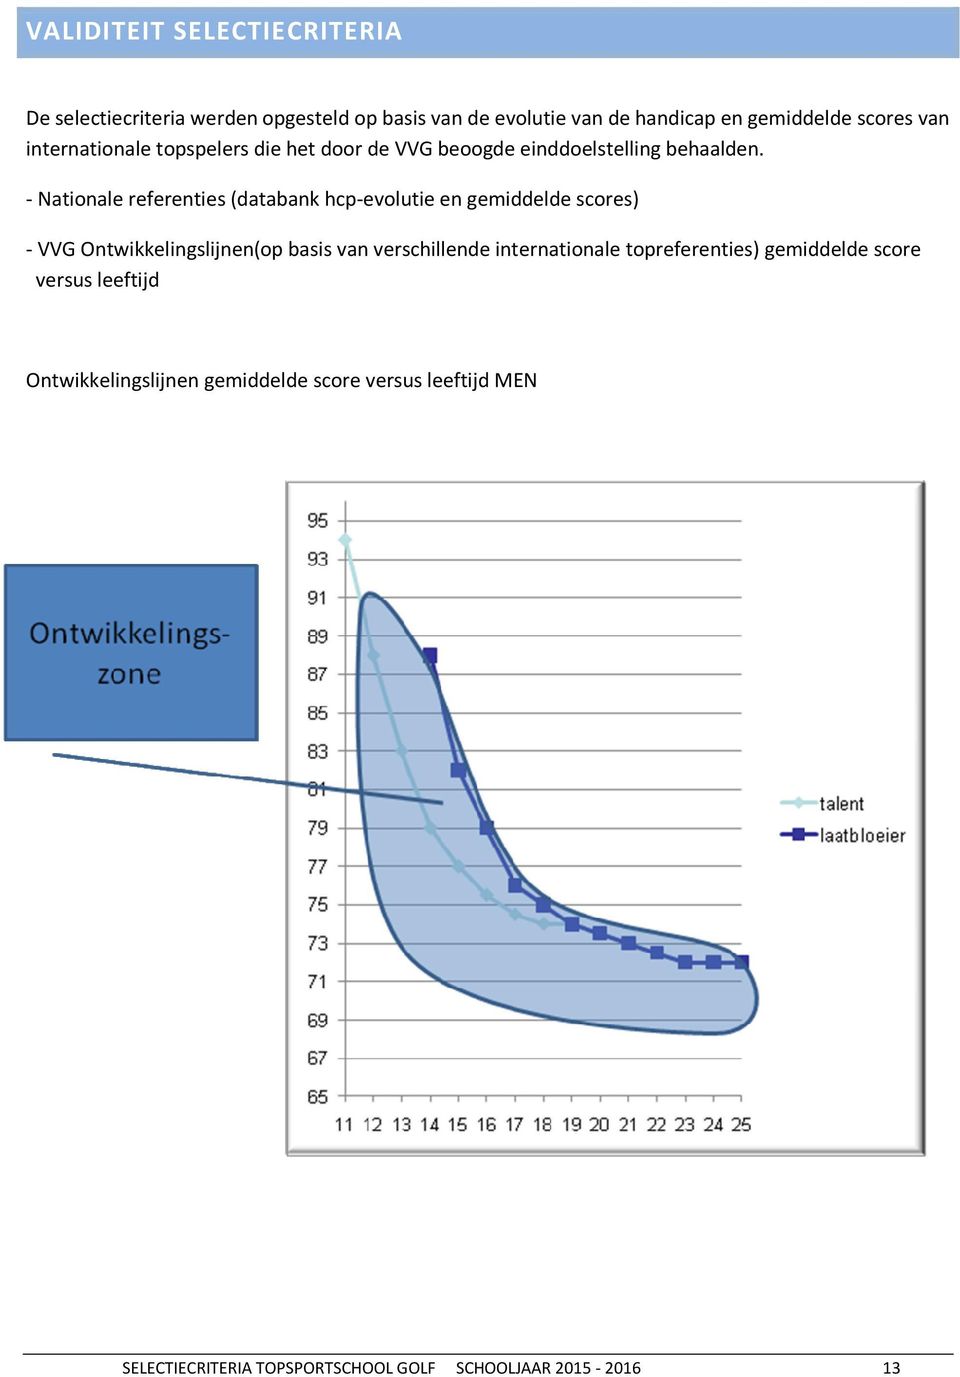 - Nationale referenties (databank hcp-evolutie en gemiddelde scores) - VVG Ontwikkelingslijnen(op basis van verschillende